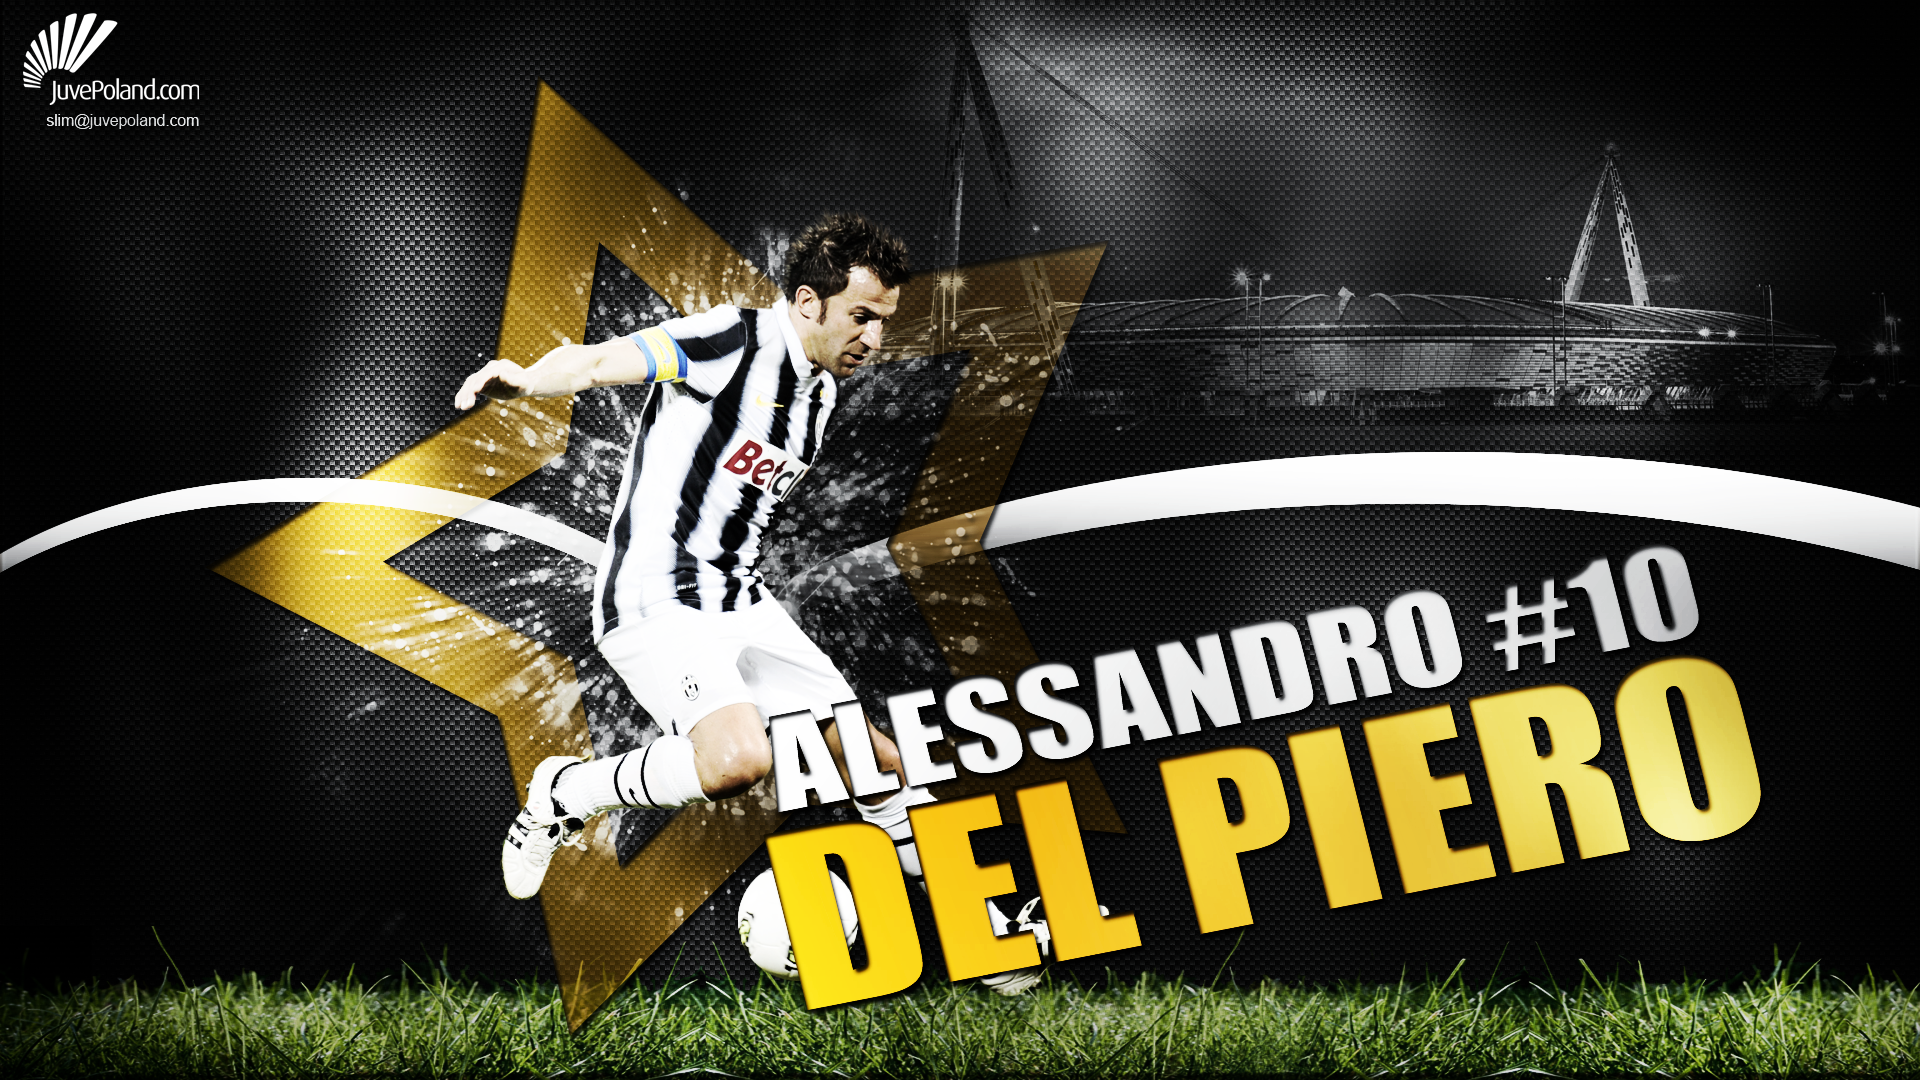 Sports Alessandro Del Piero HD Wallpaper | Background Image